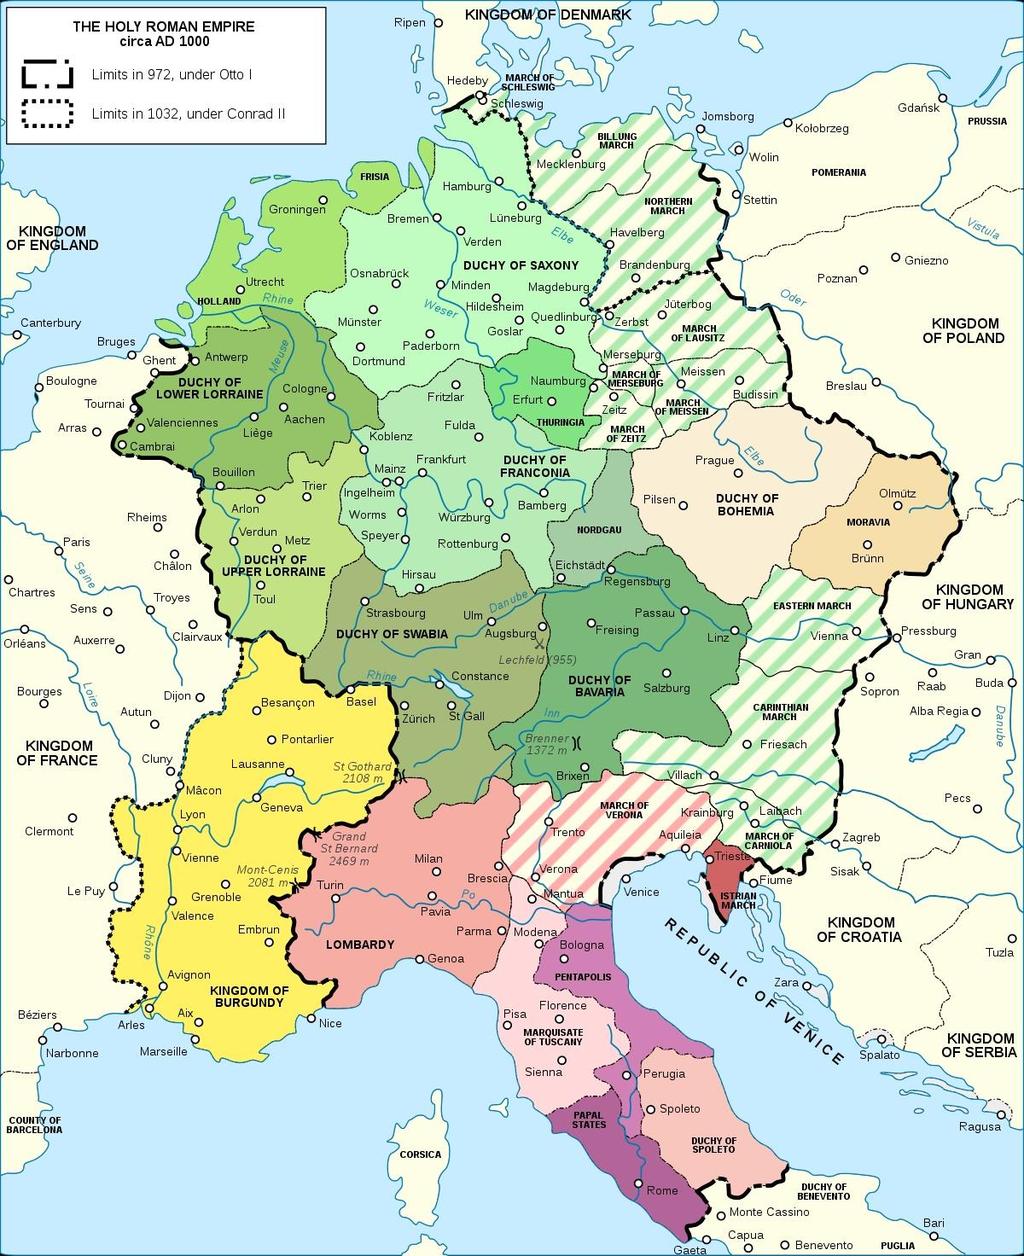 Η κεντρική Ευρώπη κατά το έτος 1000.